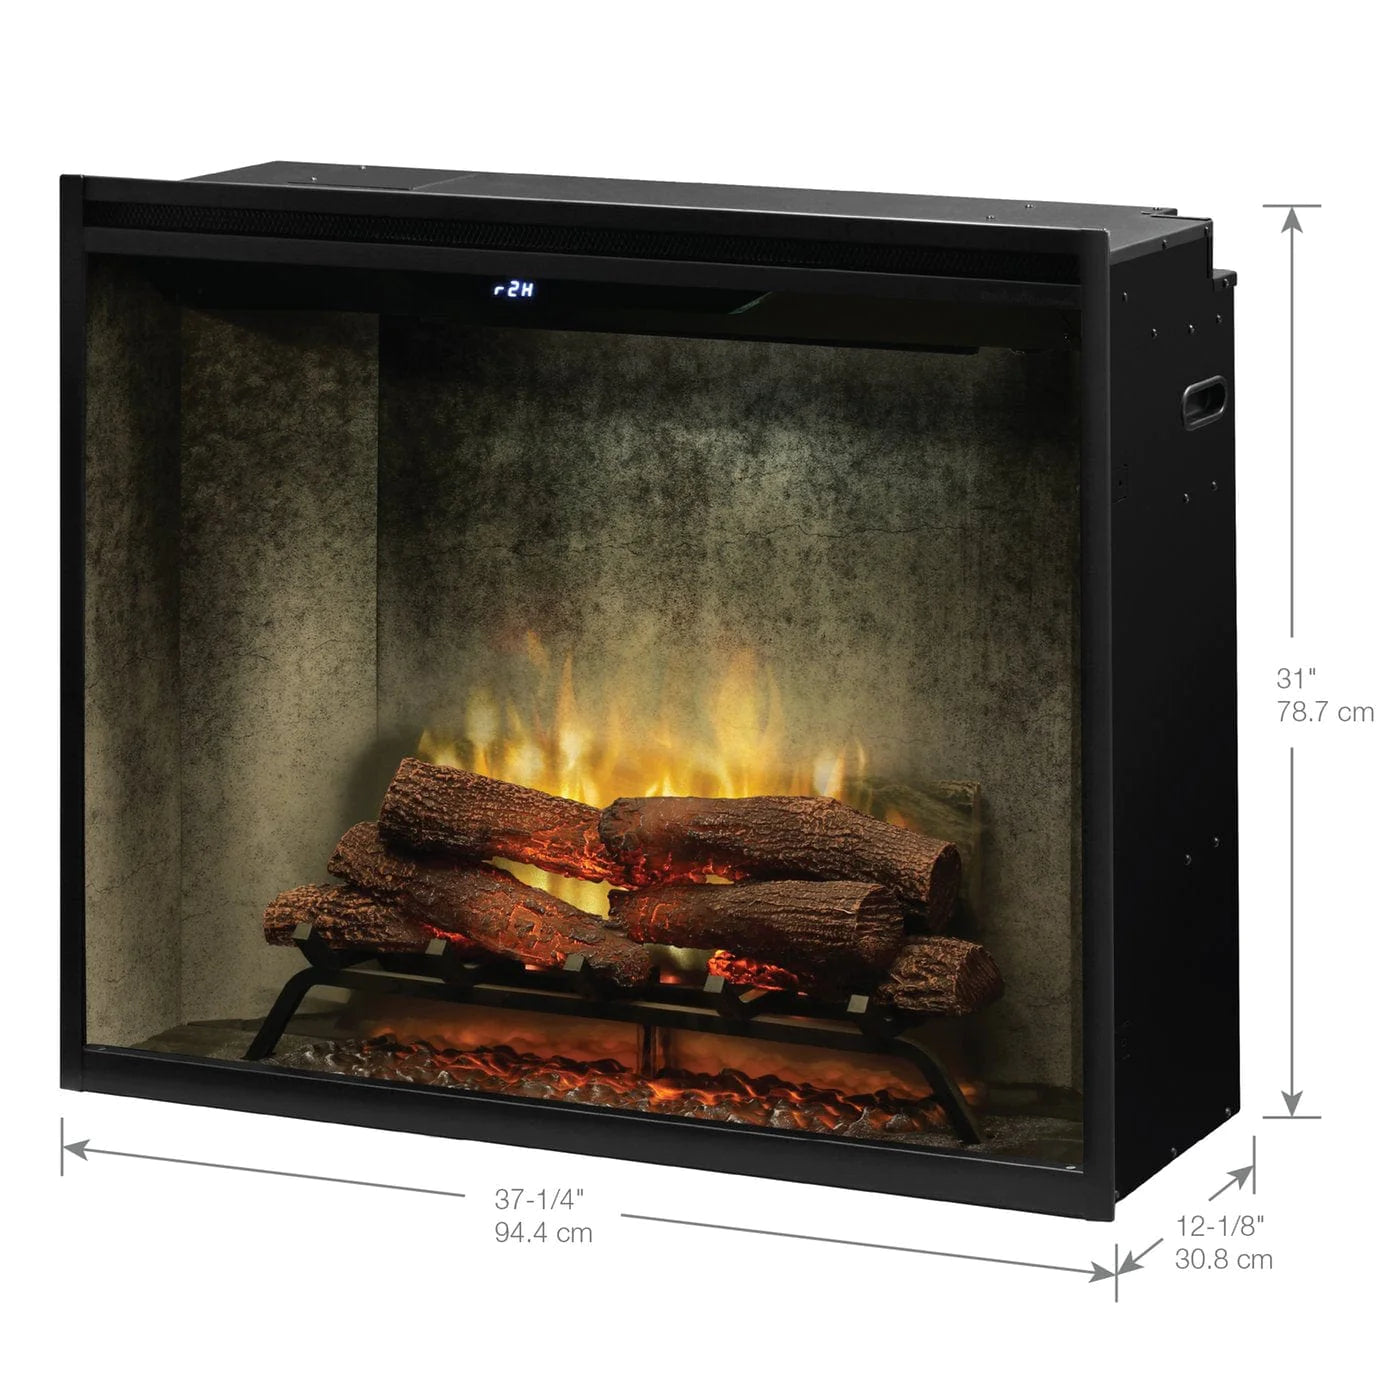 Dimplex - Revillusion® 36" Portrait Built-In Firebox, Weathered Concrete W/Glass - 500002399